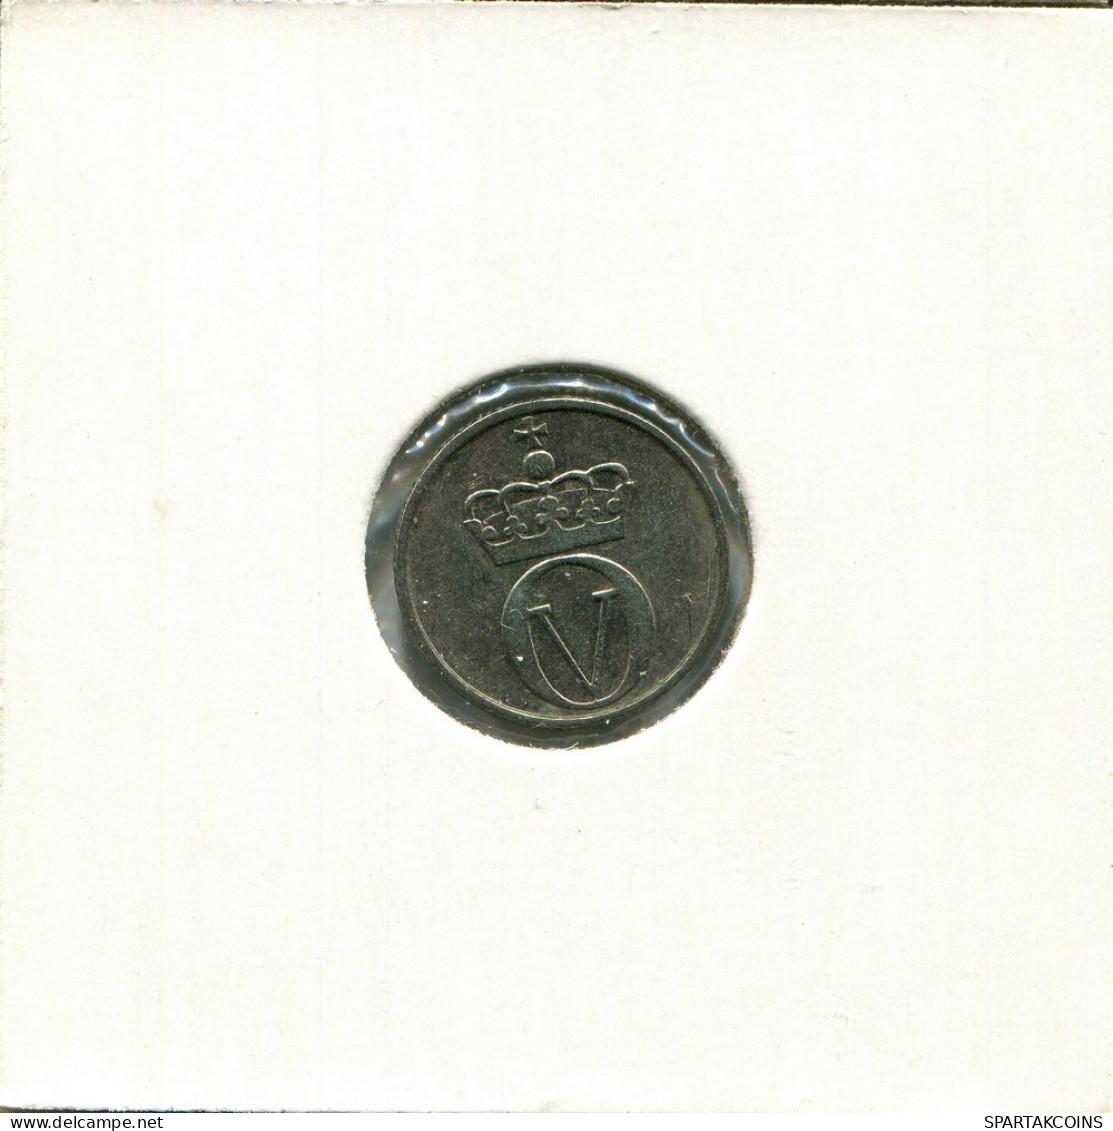 10 ORE 1971 NORWAY Coin #AU974.U.A - Noruega